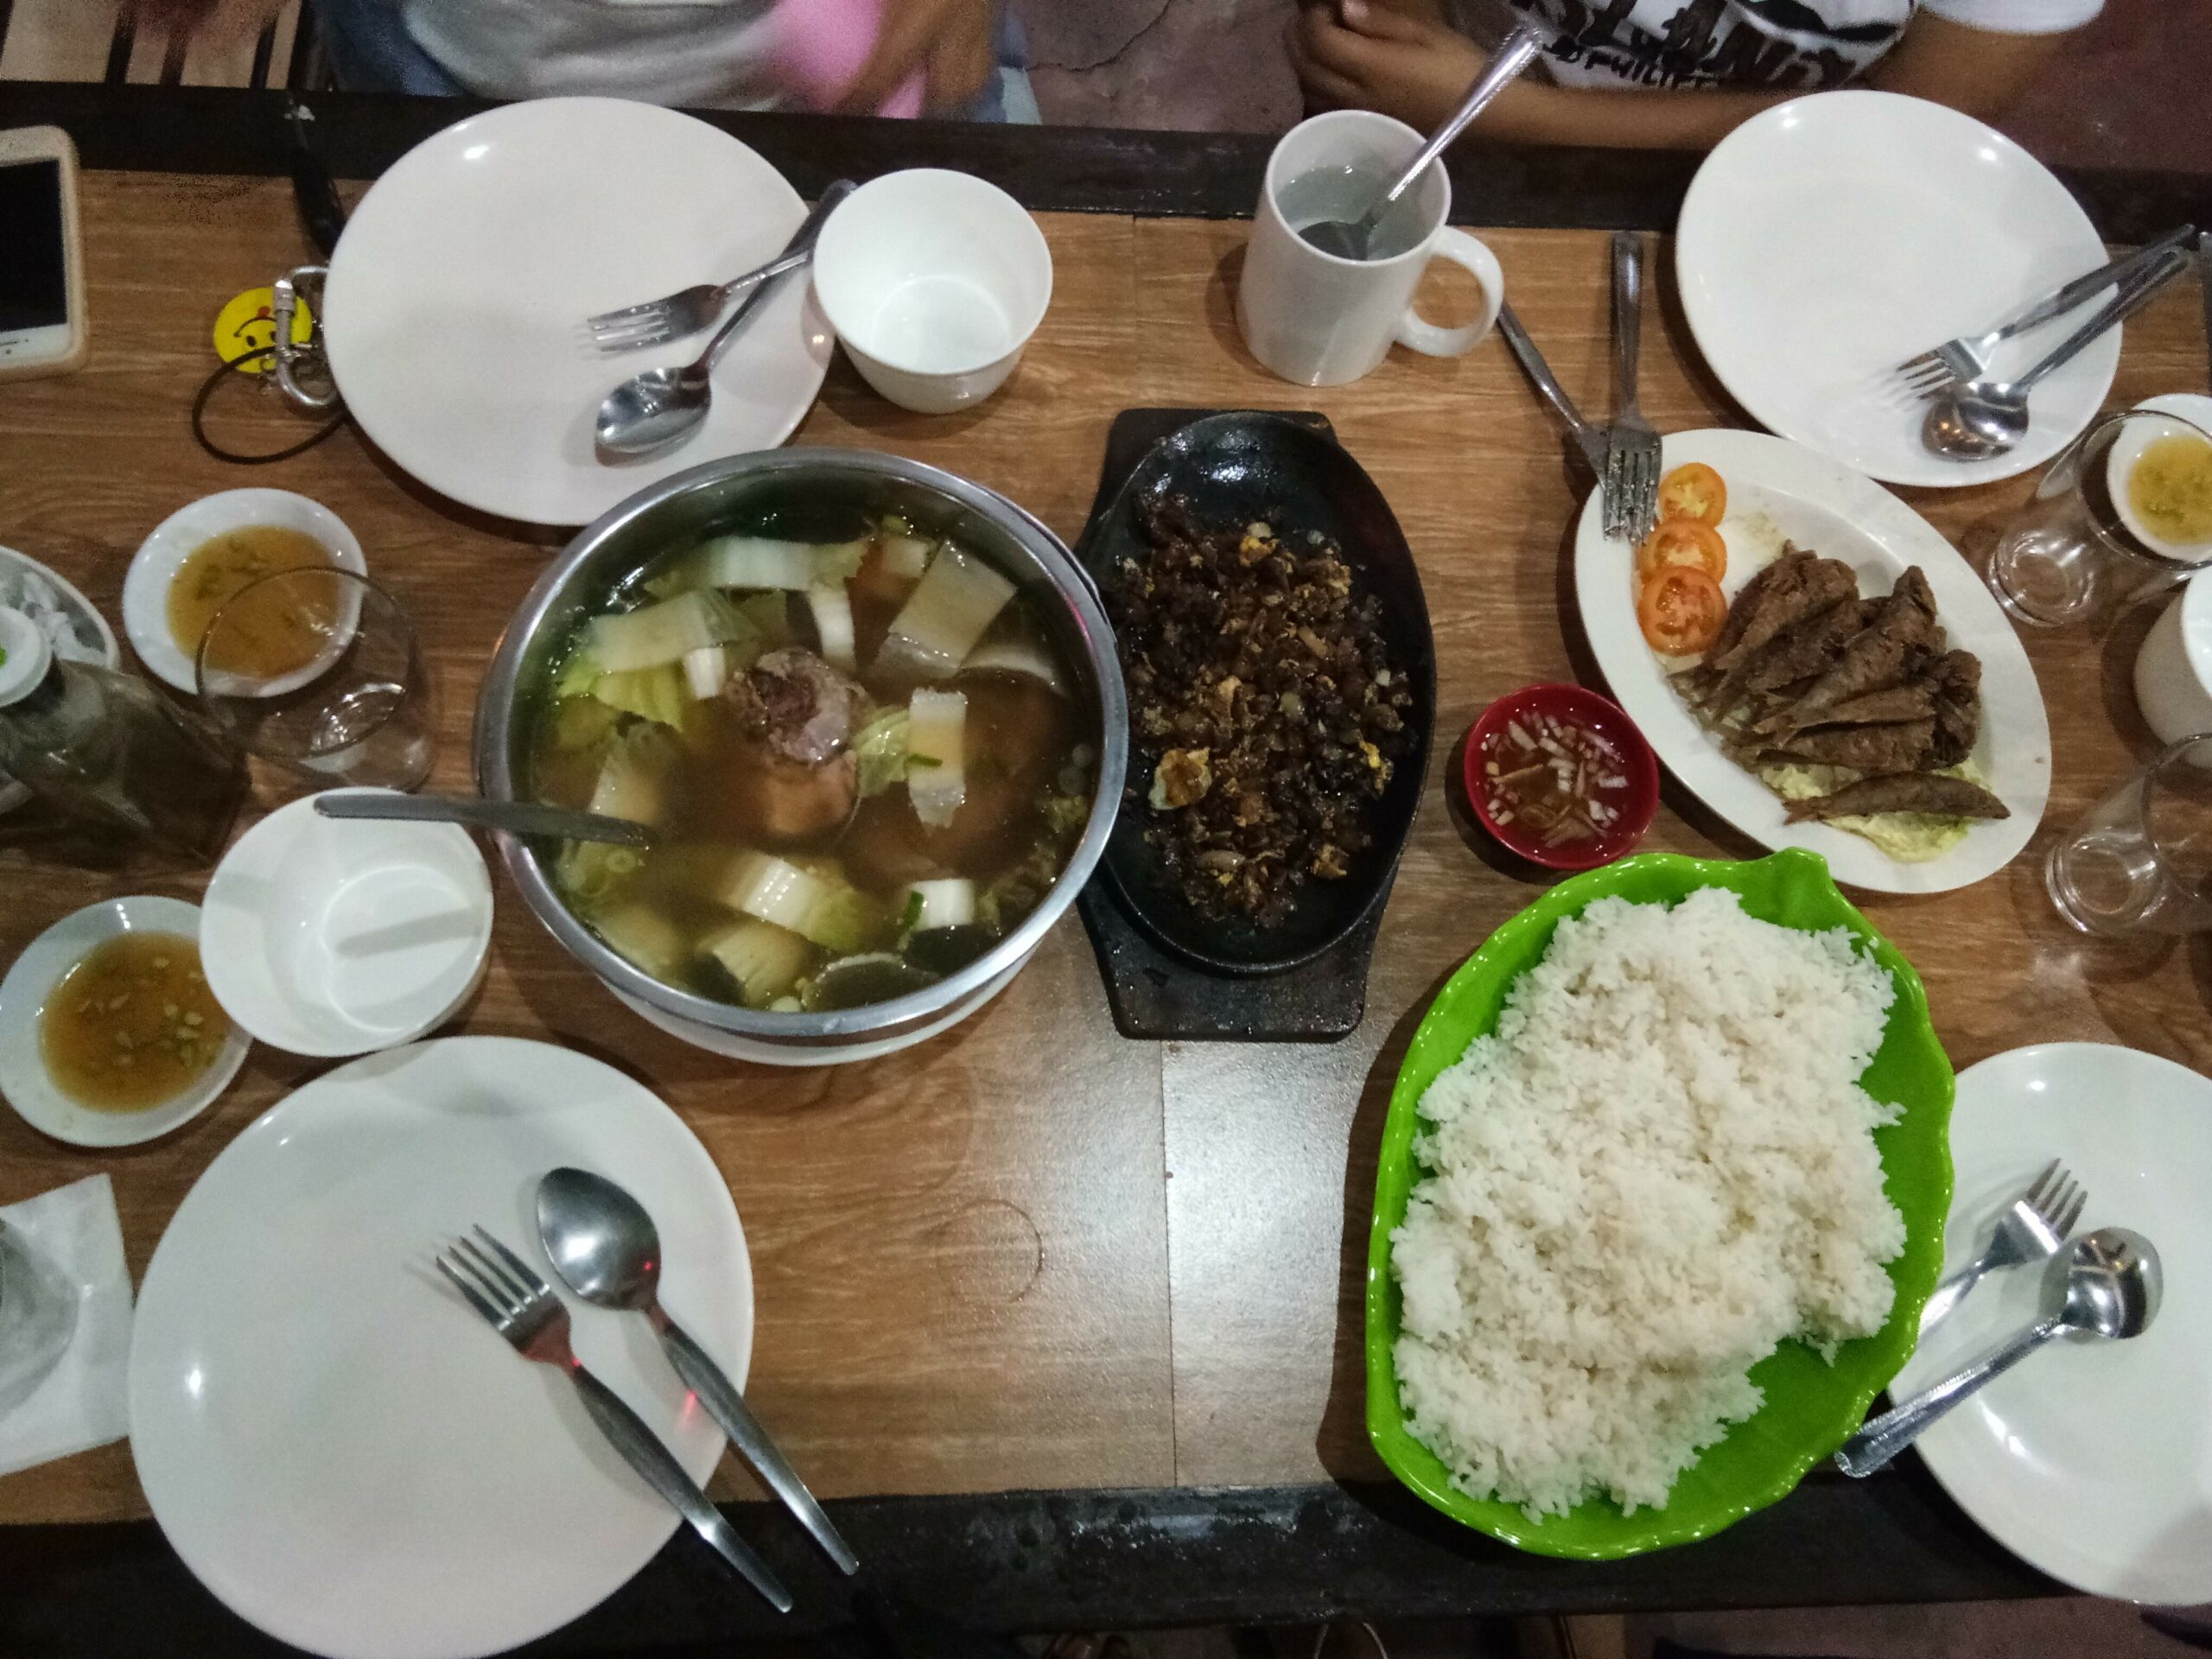  Bulalo in Tagaytay - meal sets